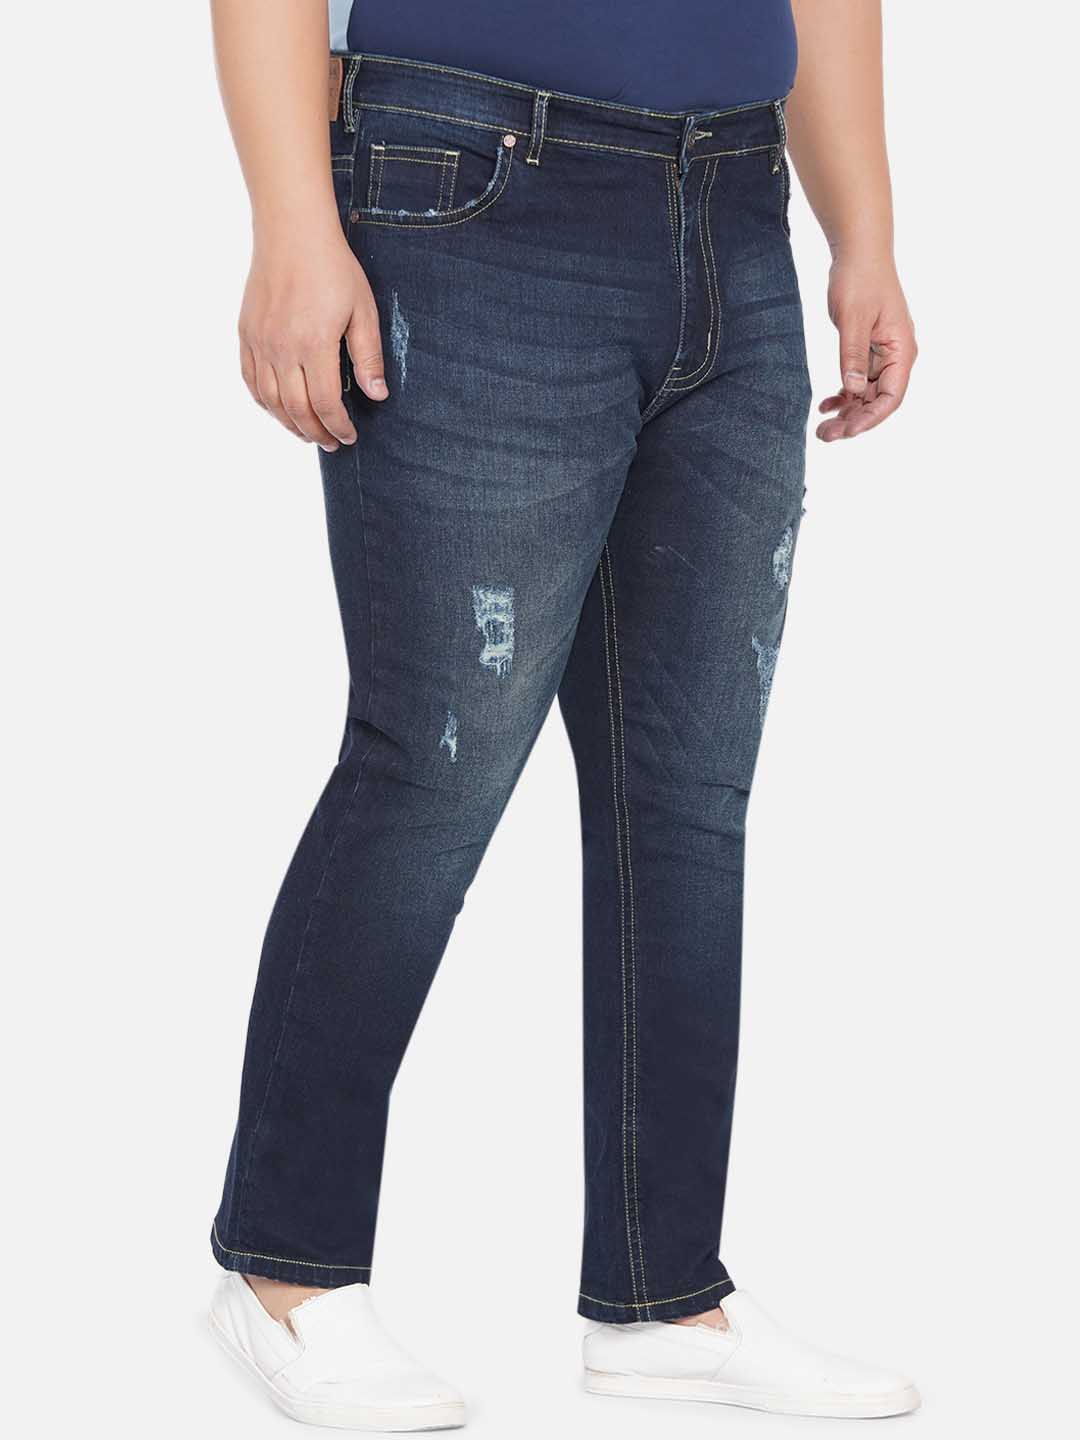 bottomwear/jeans/JPJ12235/jpj12235-3.jpg